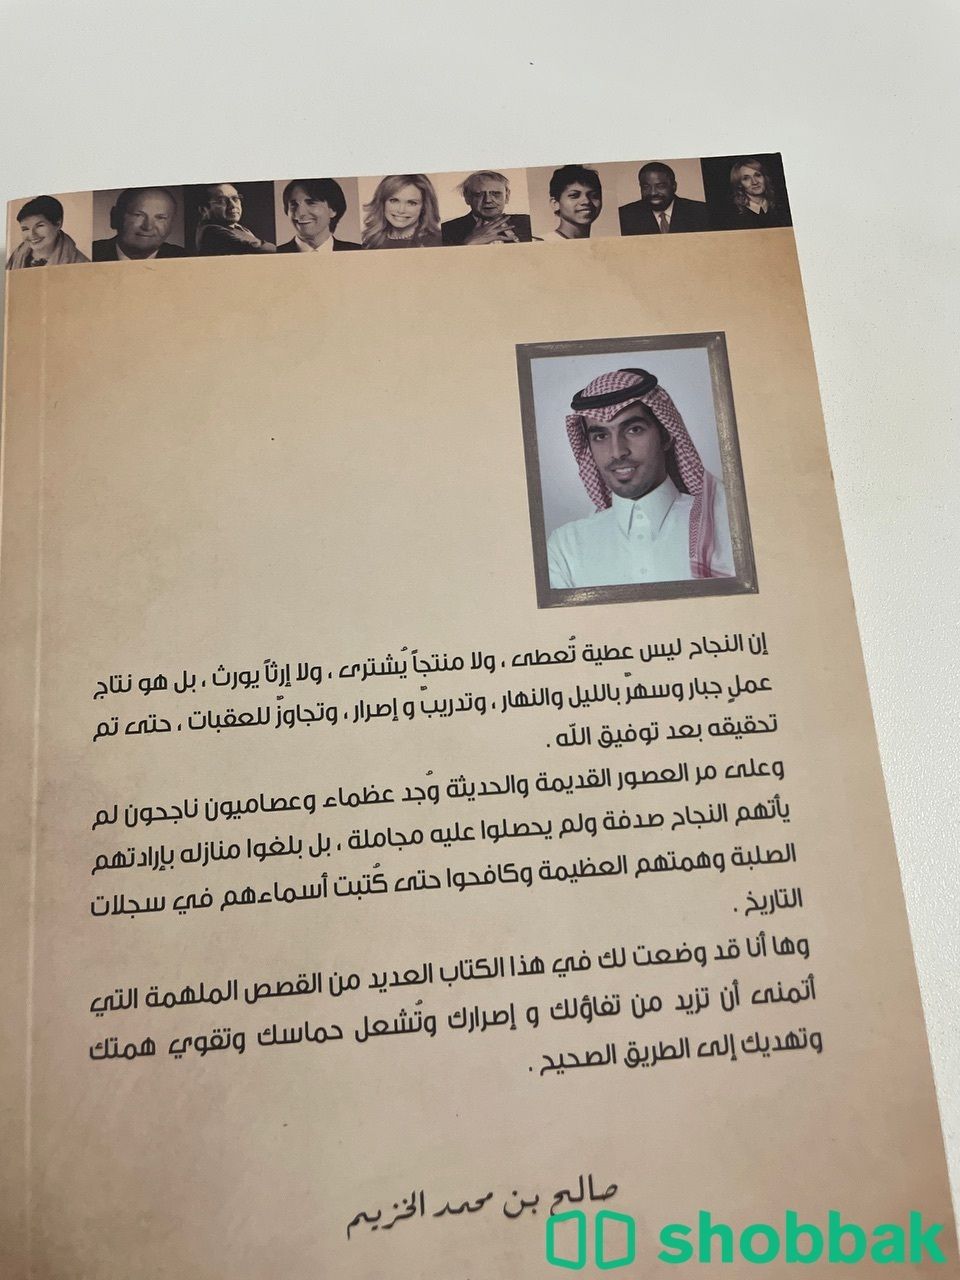 ملهمون - صالح الخزيم  Shobbak Saudi Arabia